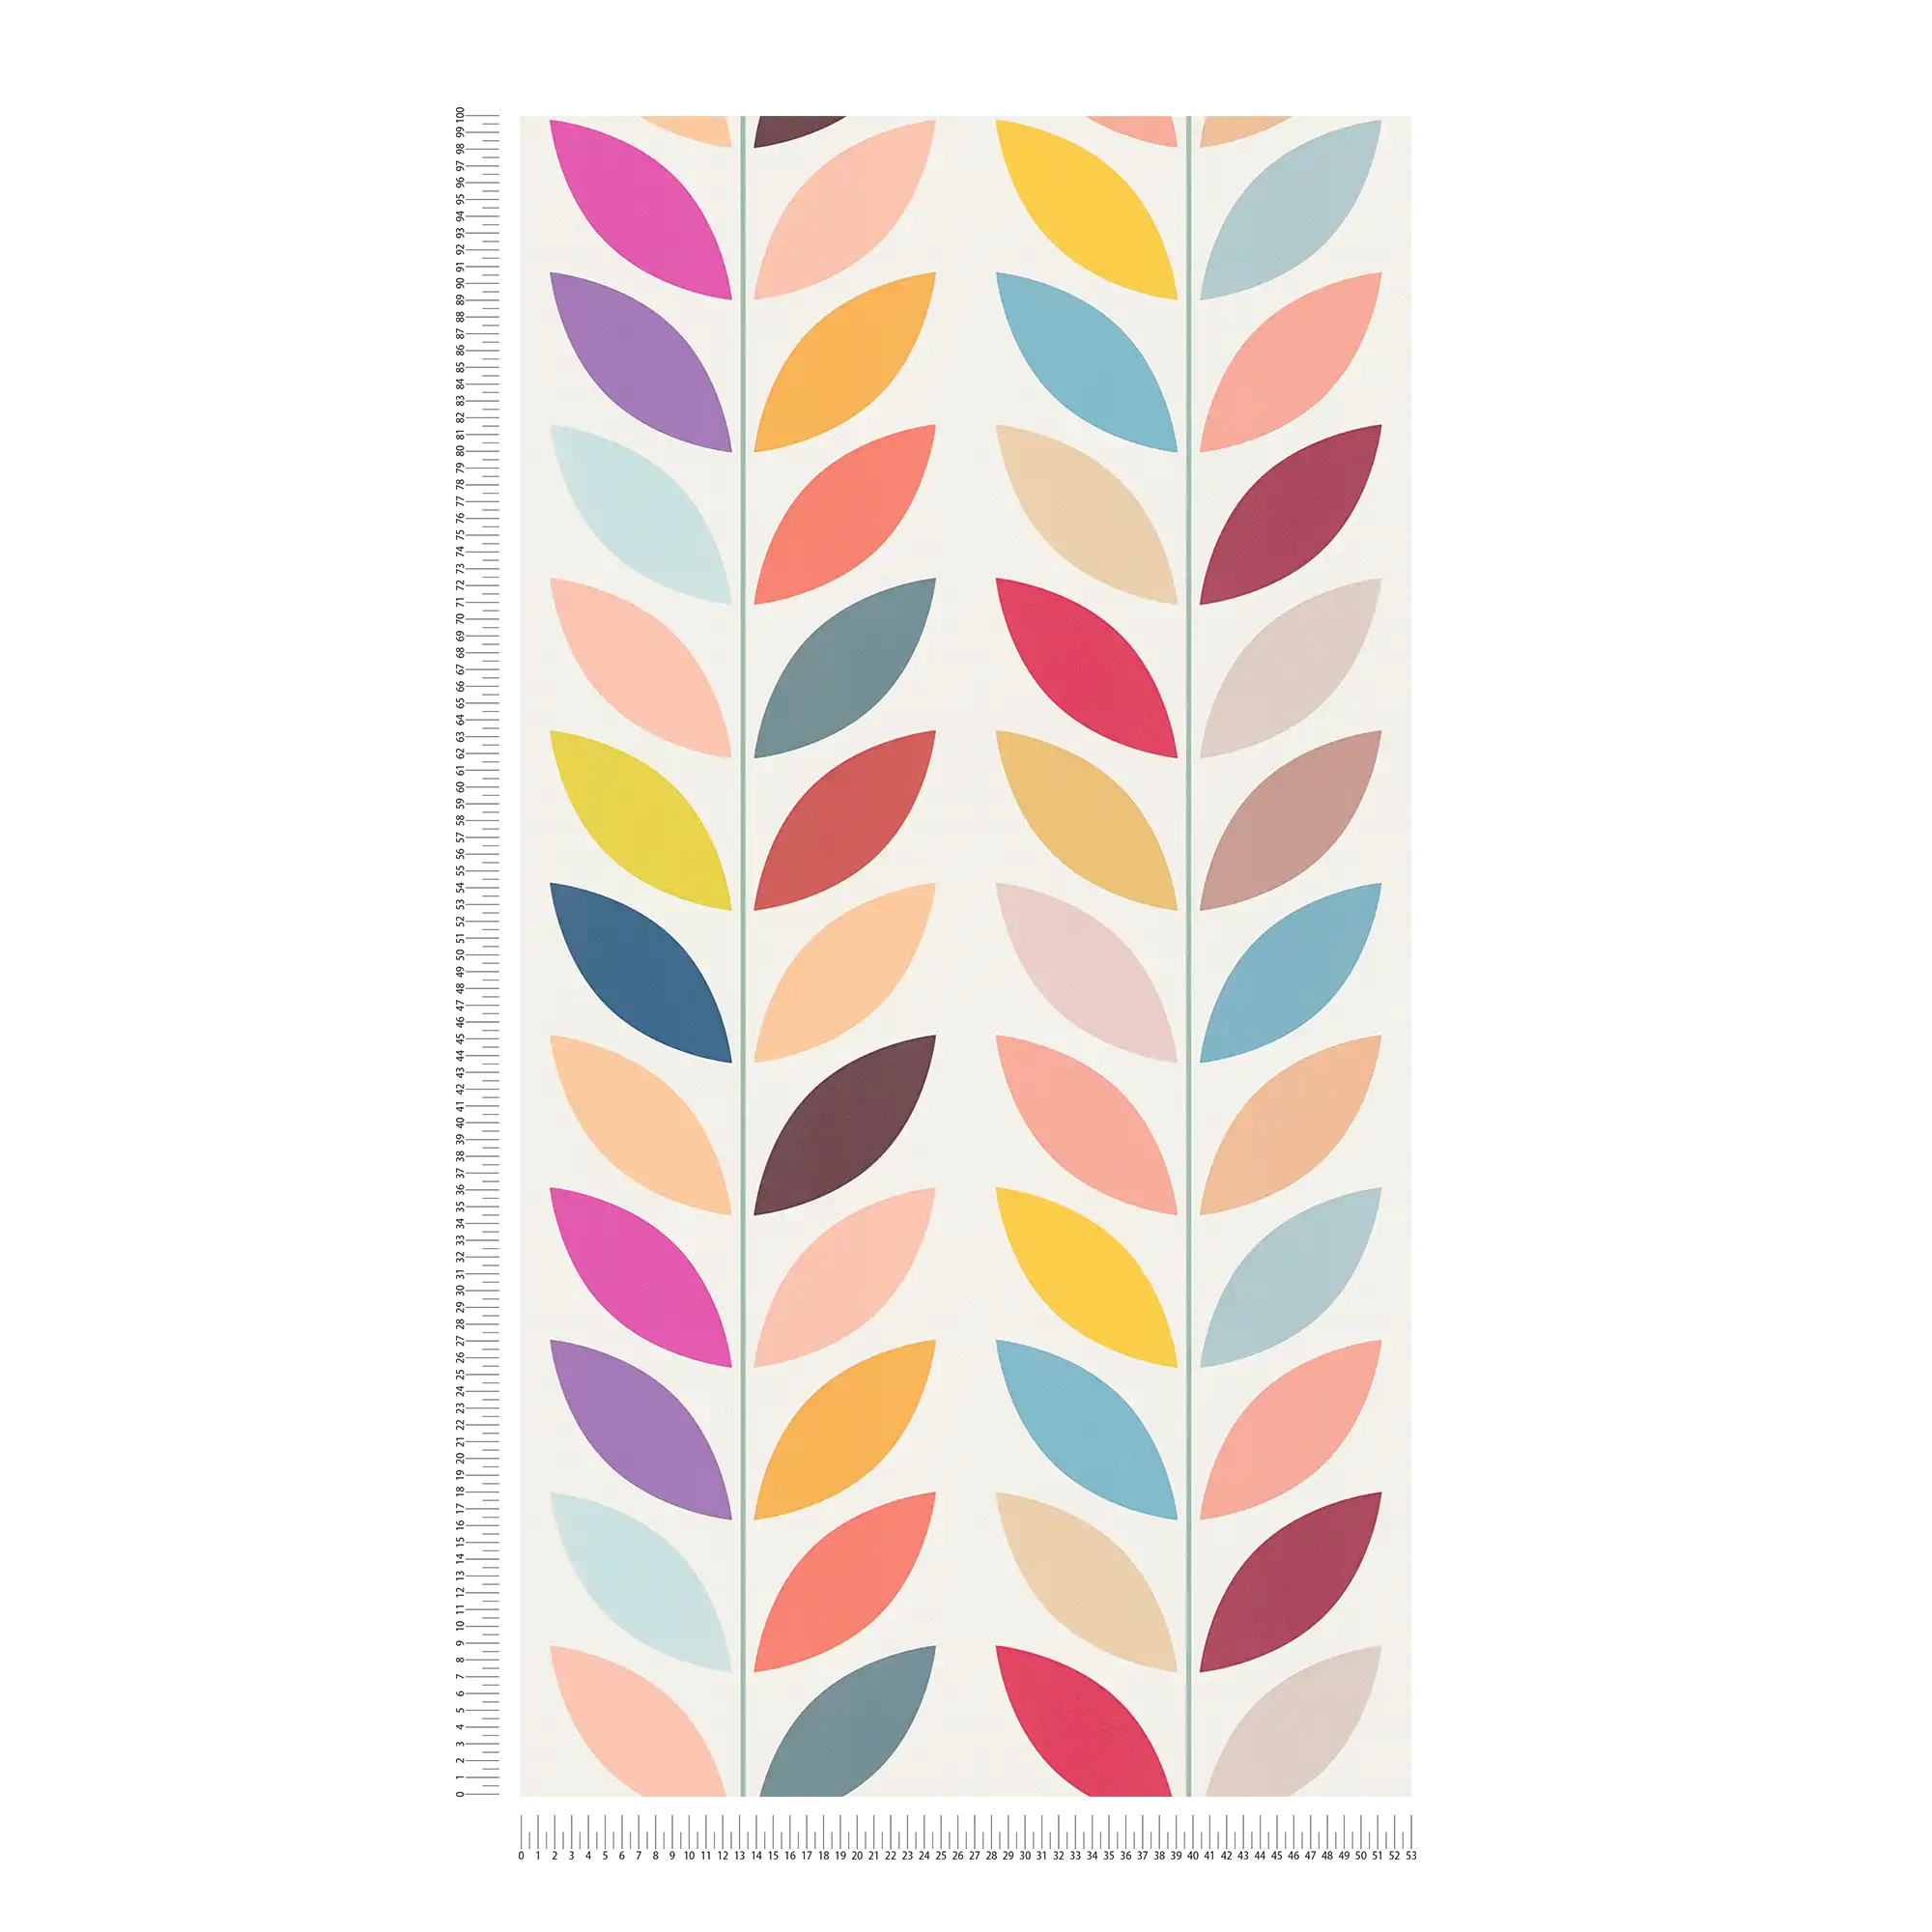             Retro vliesbehang met opvallend kleurrijk bladmotief - crème, veelkleurig
        